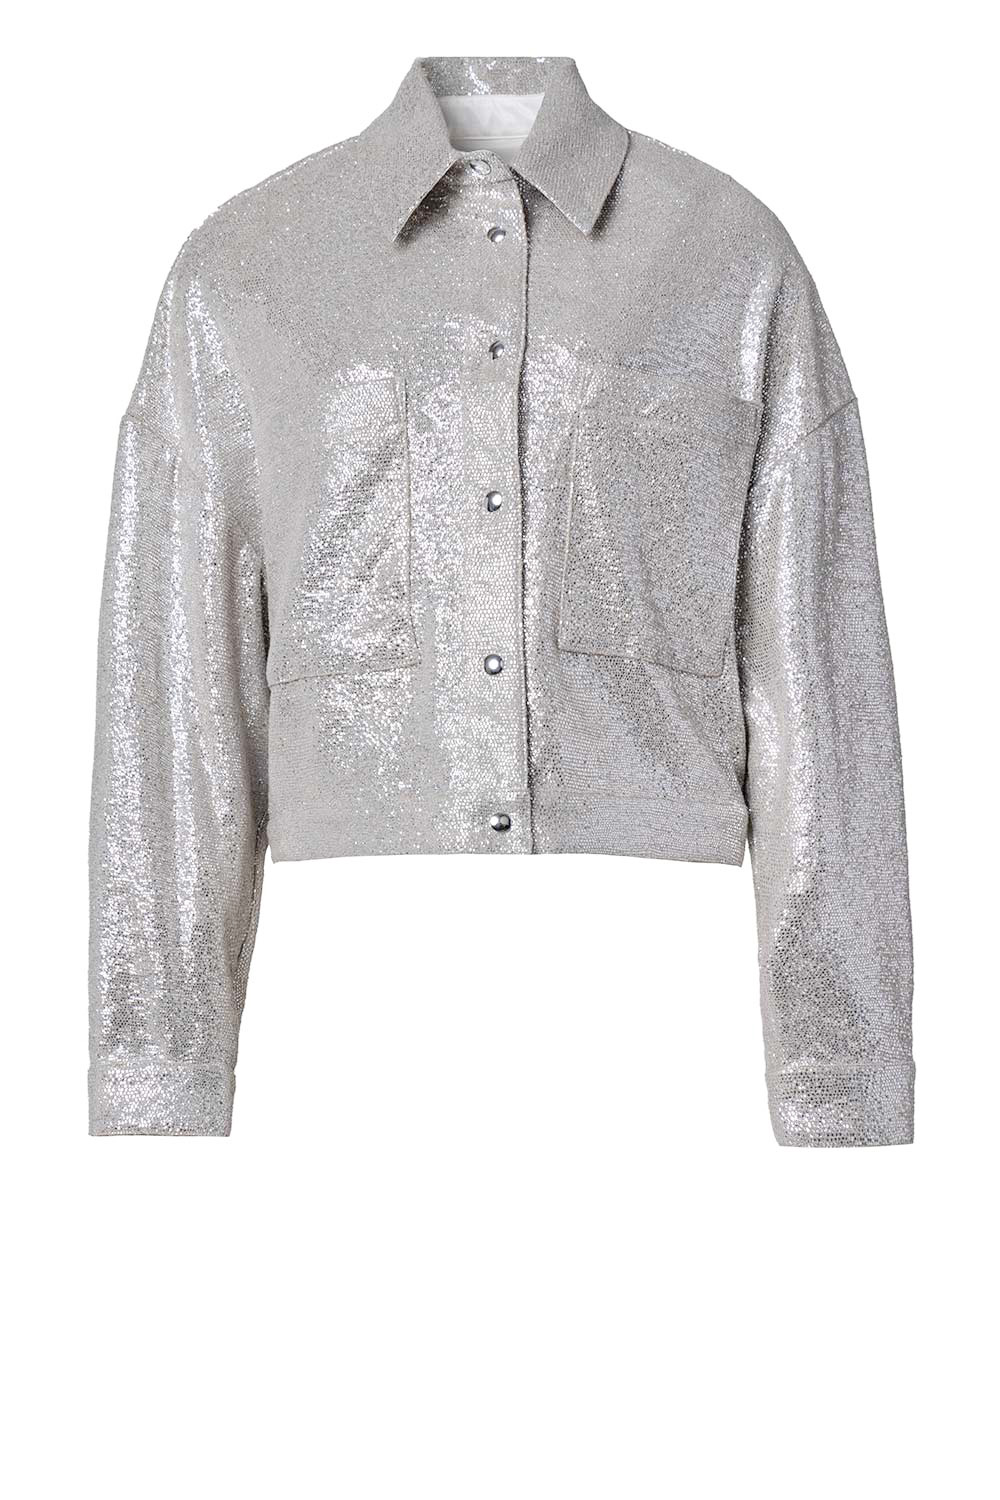 IRO Oversized metallic jasje Suzel zilver